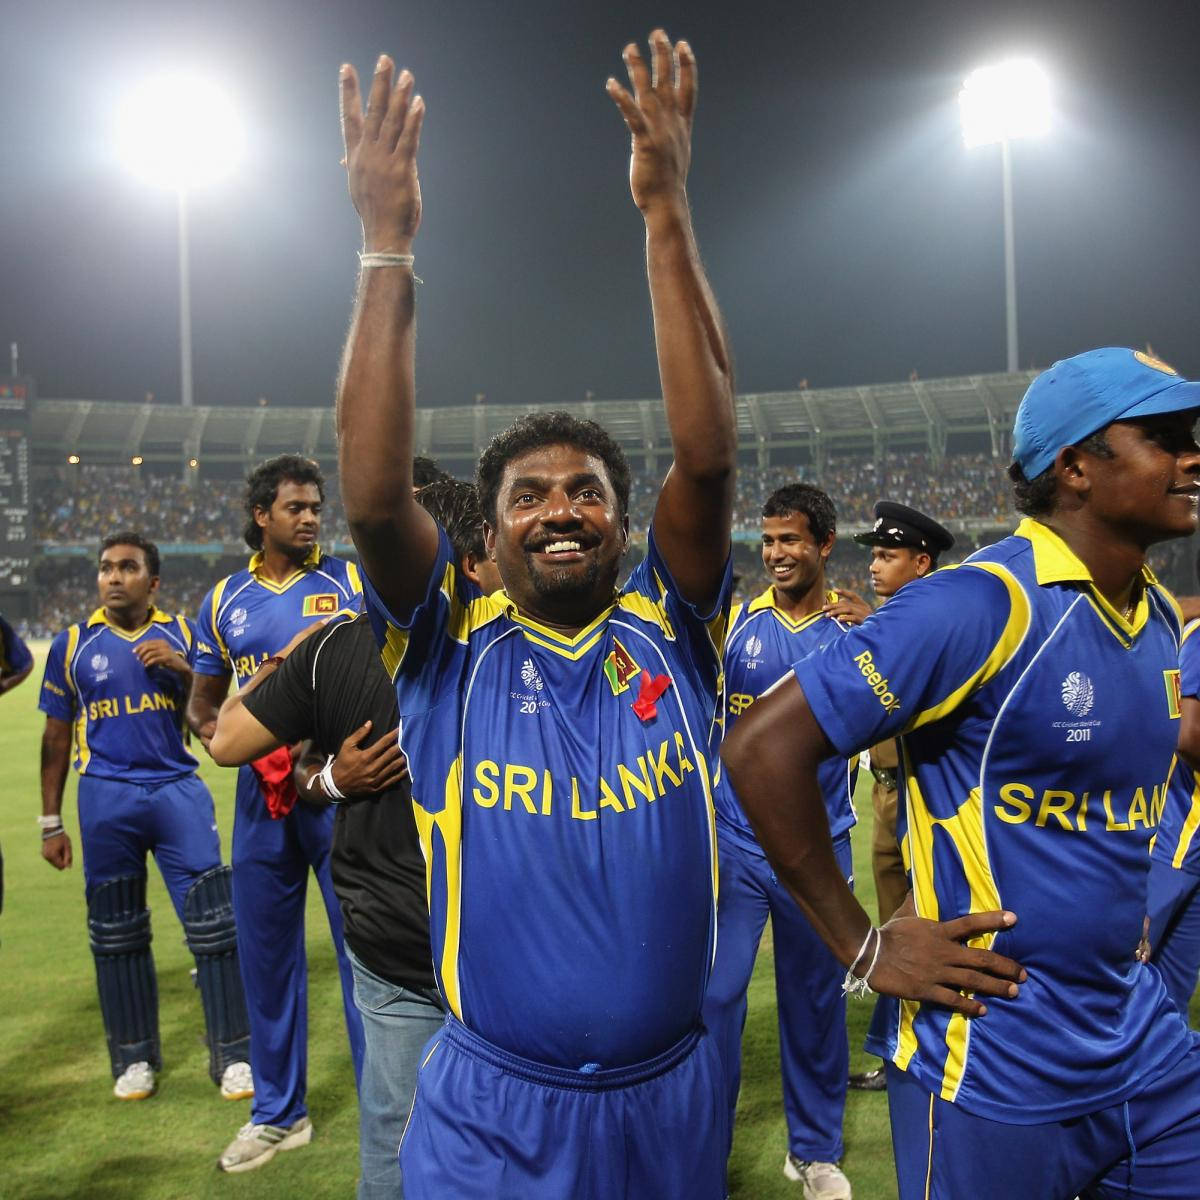 Sri Lanka Cricket bifald på banen Wallpaper Wallpaper